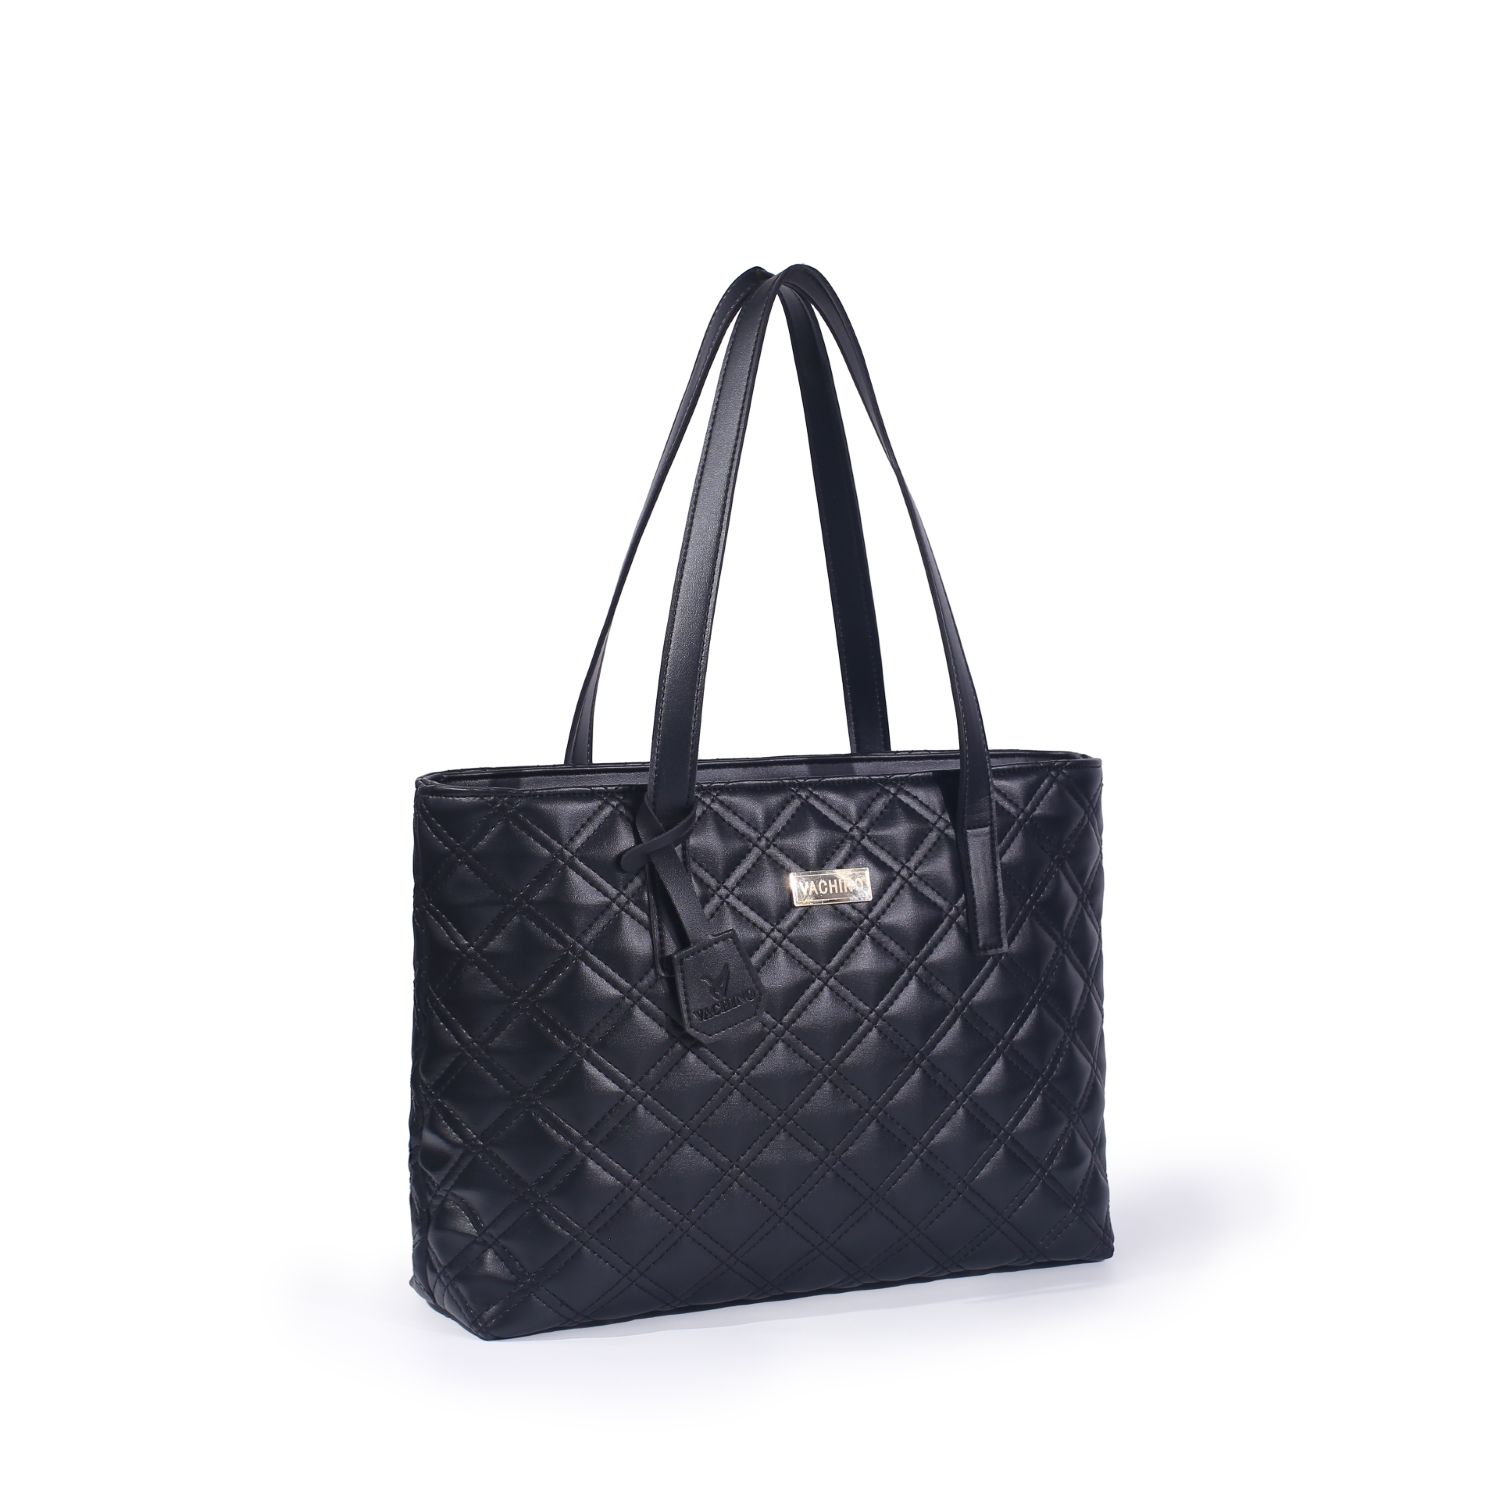 Túi xách nữ thời trang cao cấp sang trọng thương hiệu VACHINO-TX017